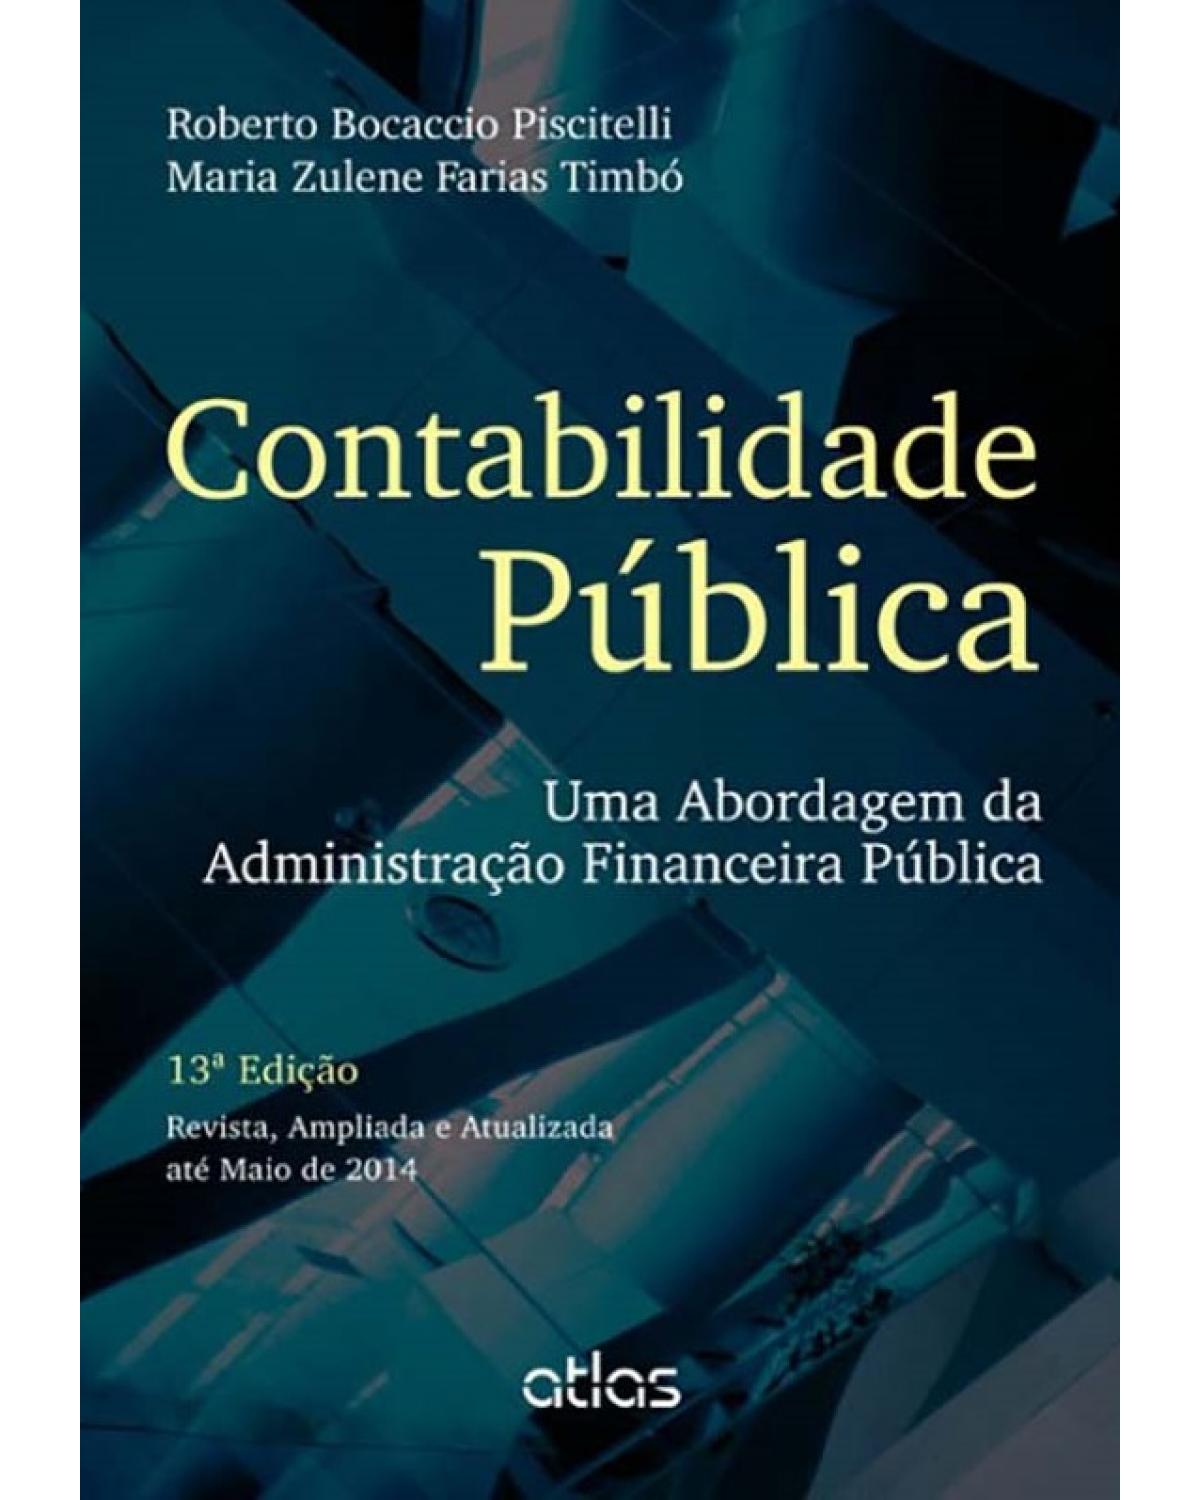 Contabilidade pública - Uma abordagem da administração financeira pública - 13ª Edição | 2014